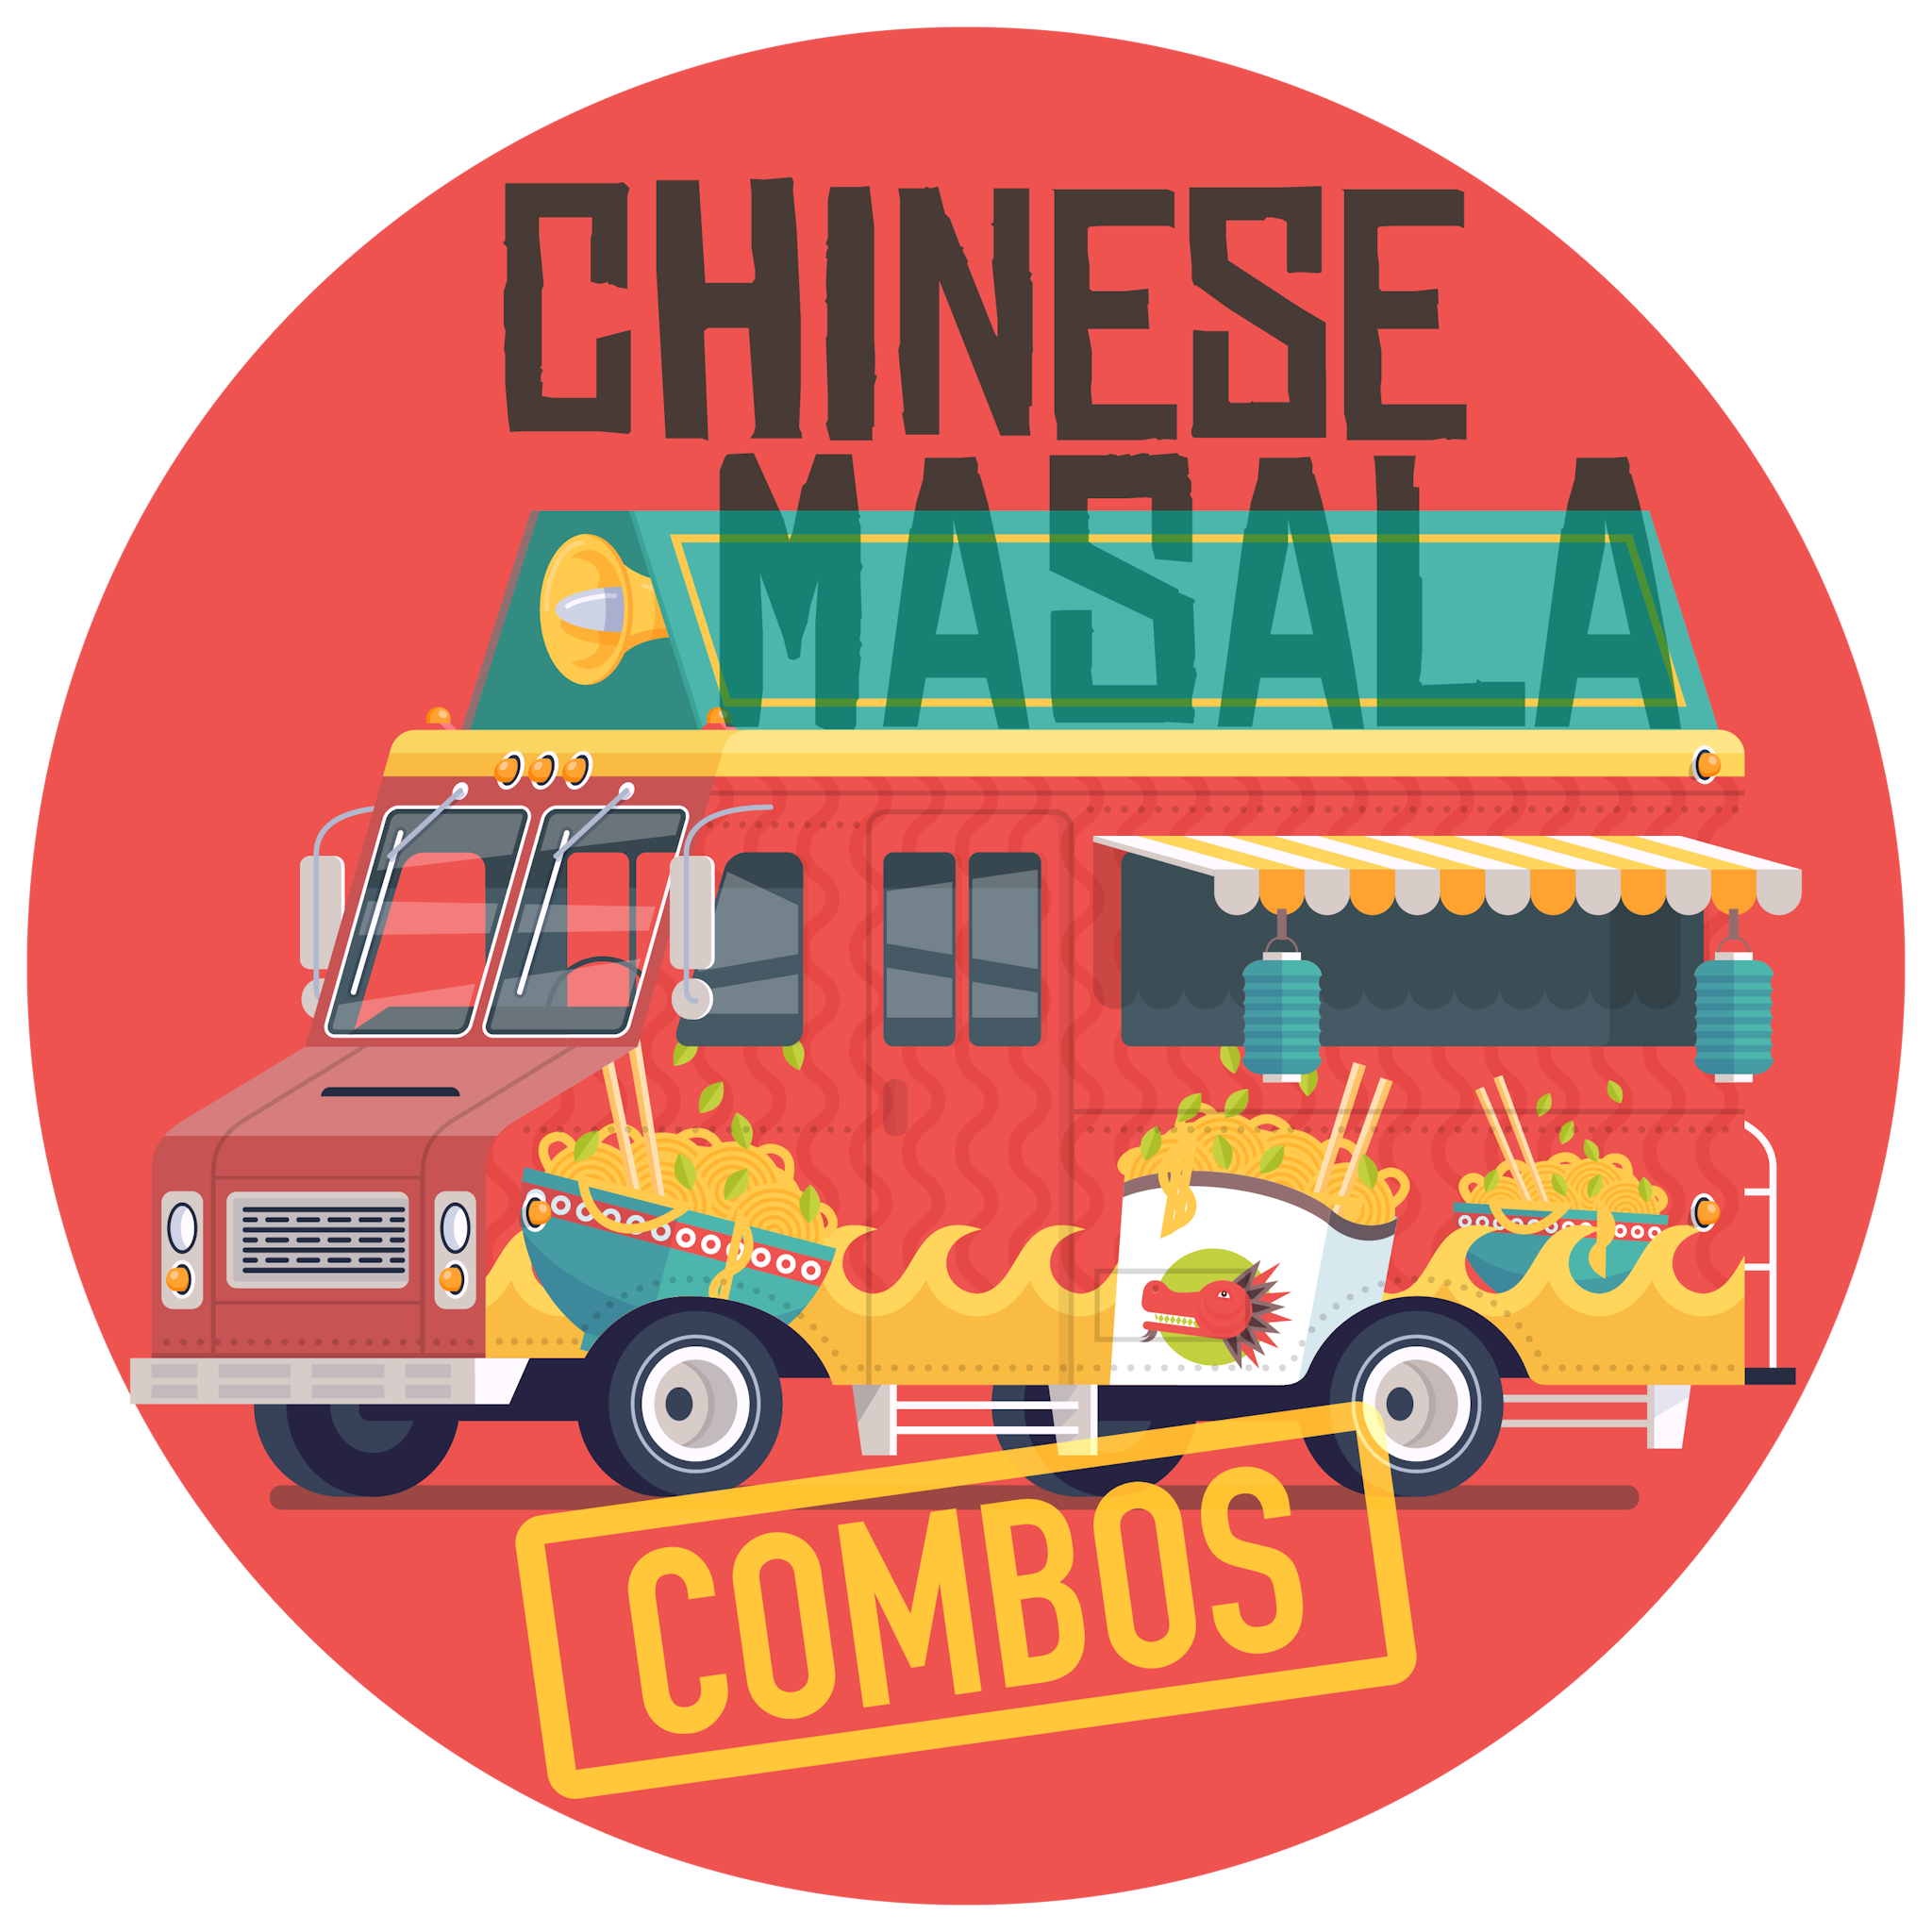 Chinese Masala Combo Brand Logo